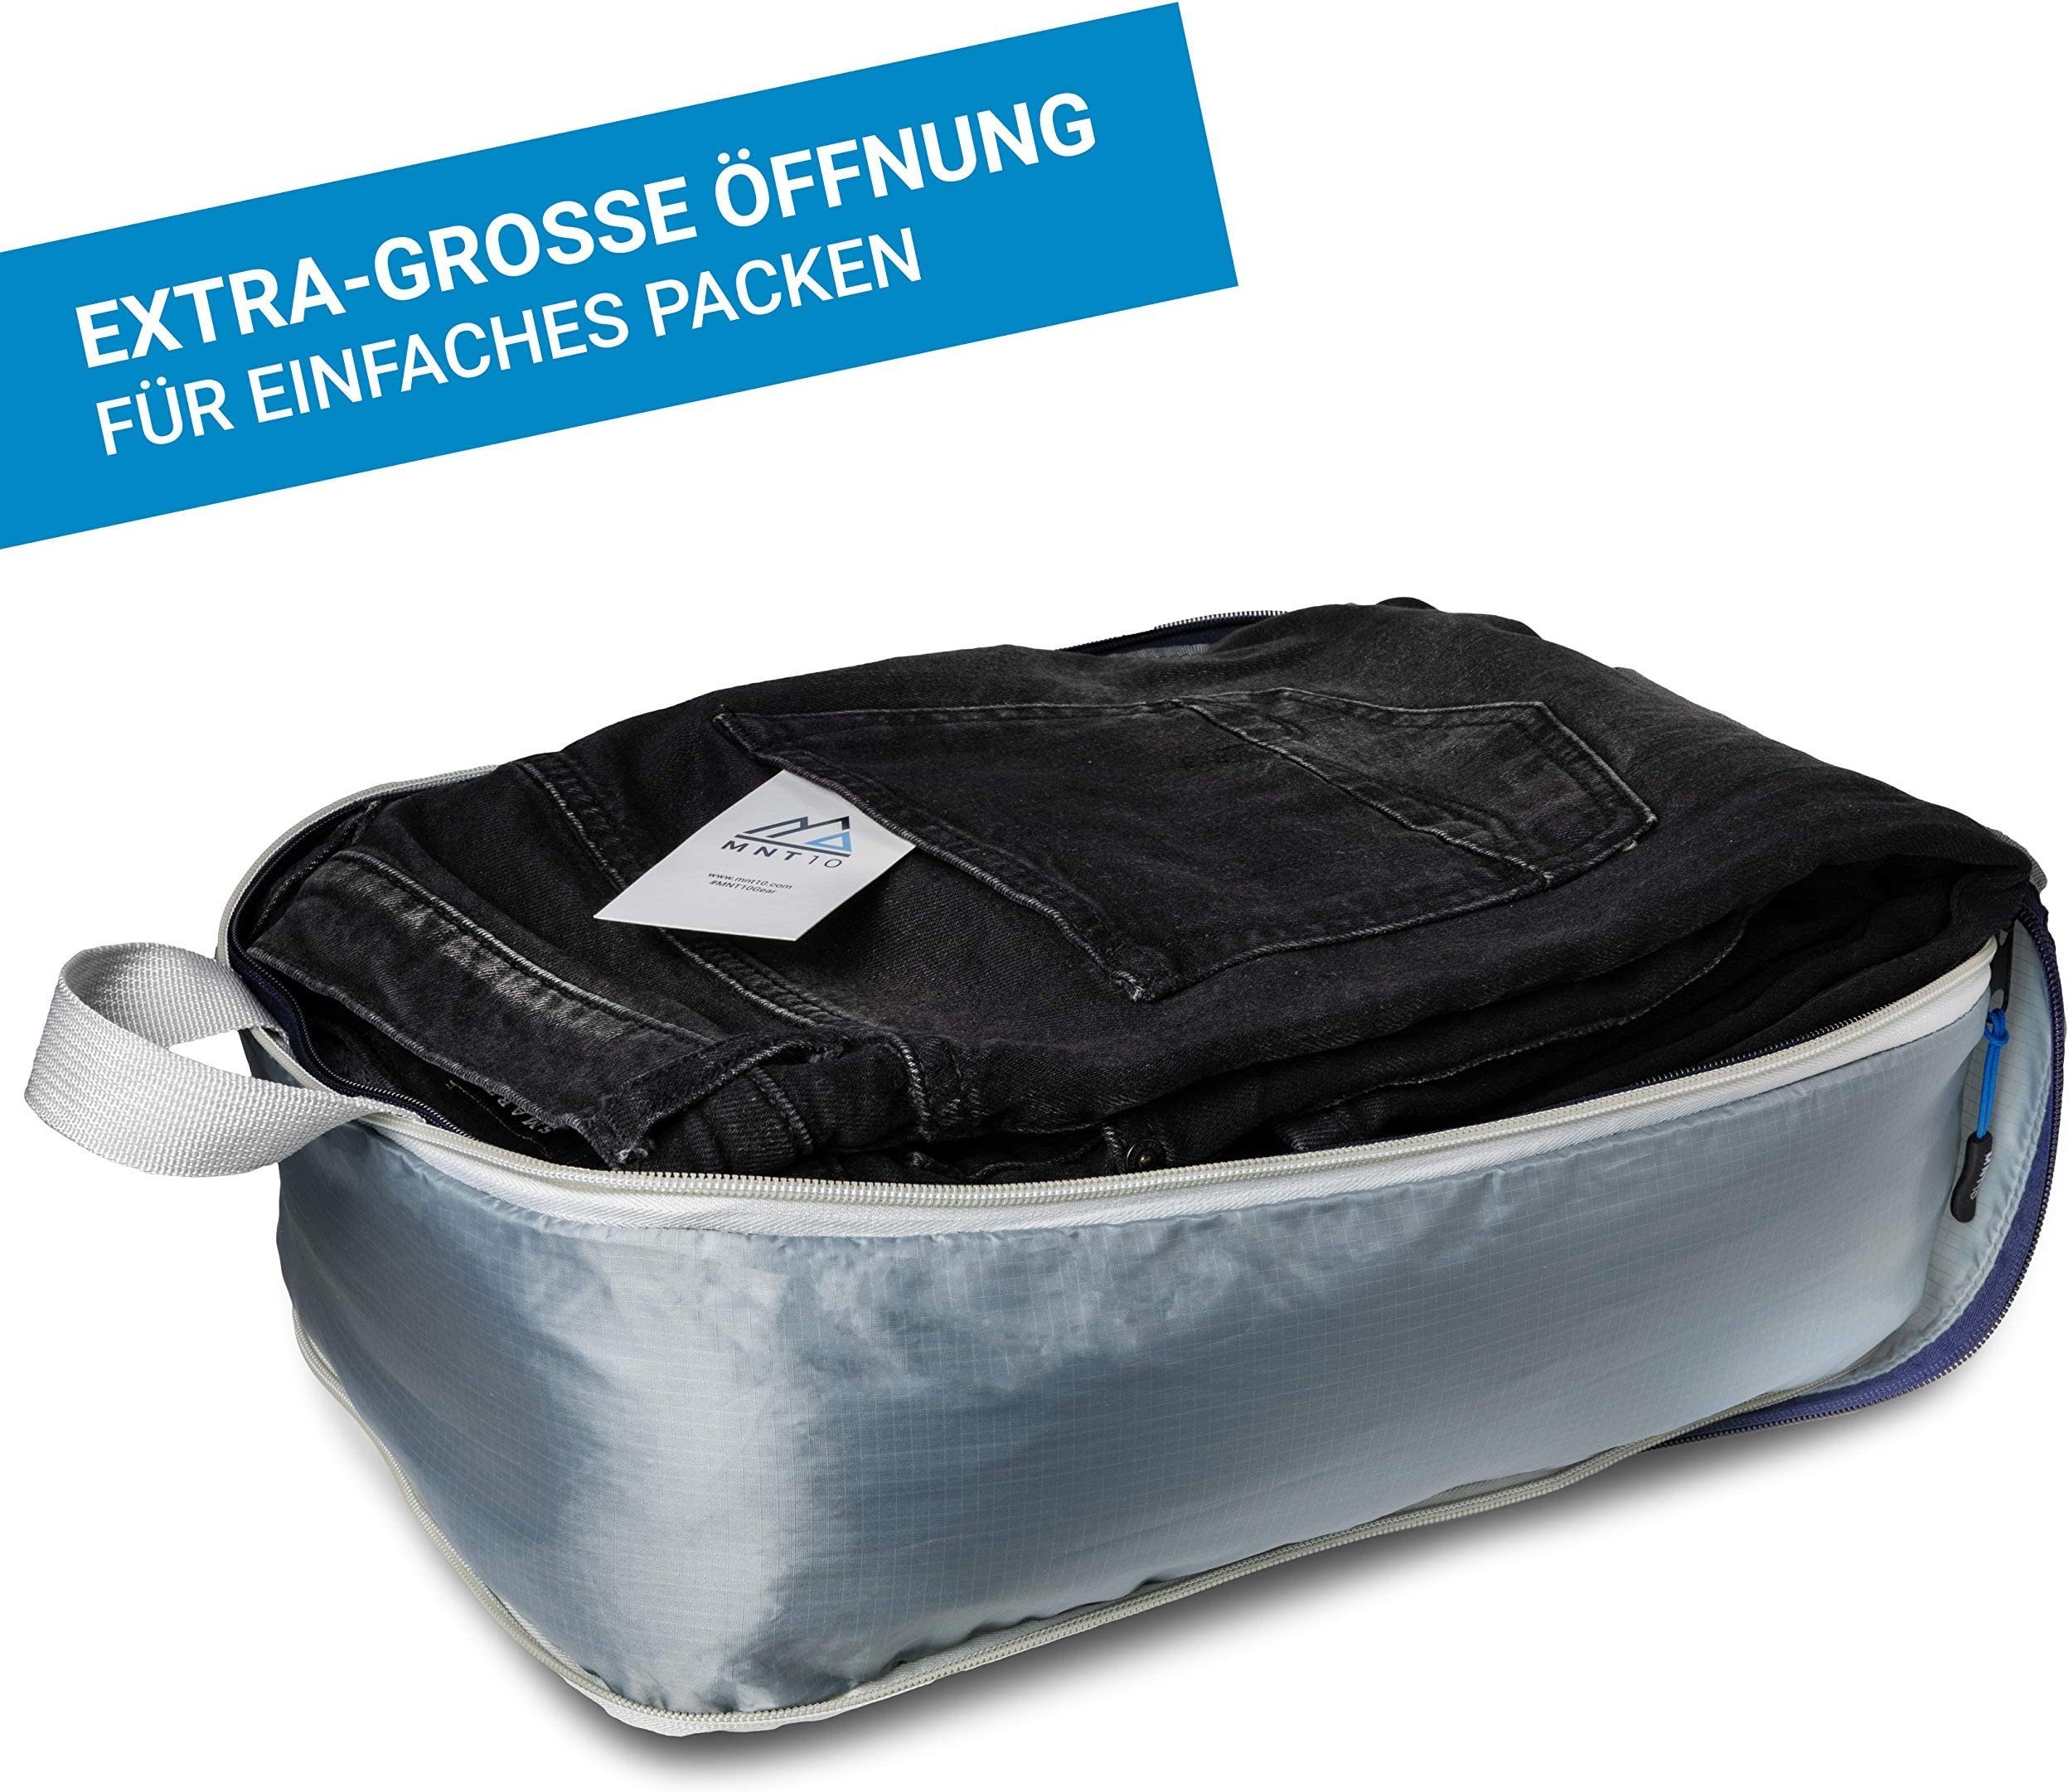 MNT10 Taschenorganizer Packwürfel Packtaschen als Kompression wasserdichte Kofferorganizer für Organizer Rucksack leichte I mit Packtaschen Kompressionsbeutel